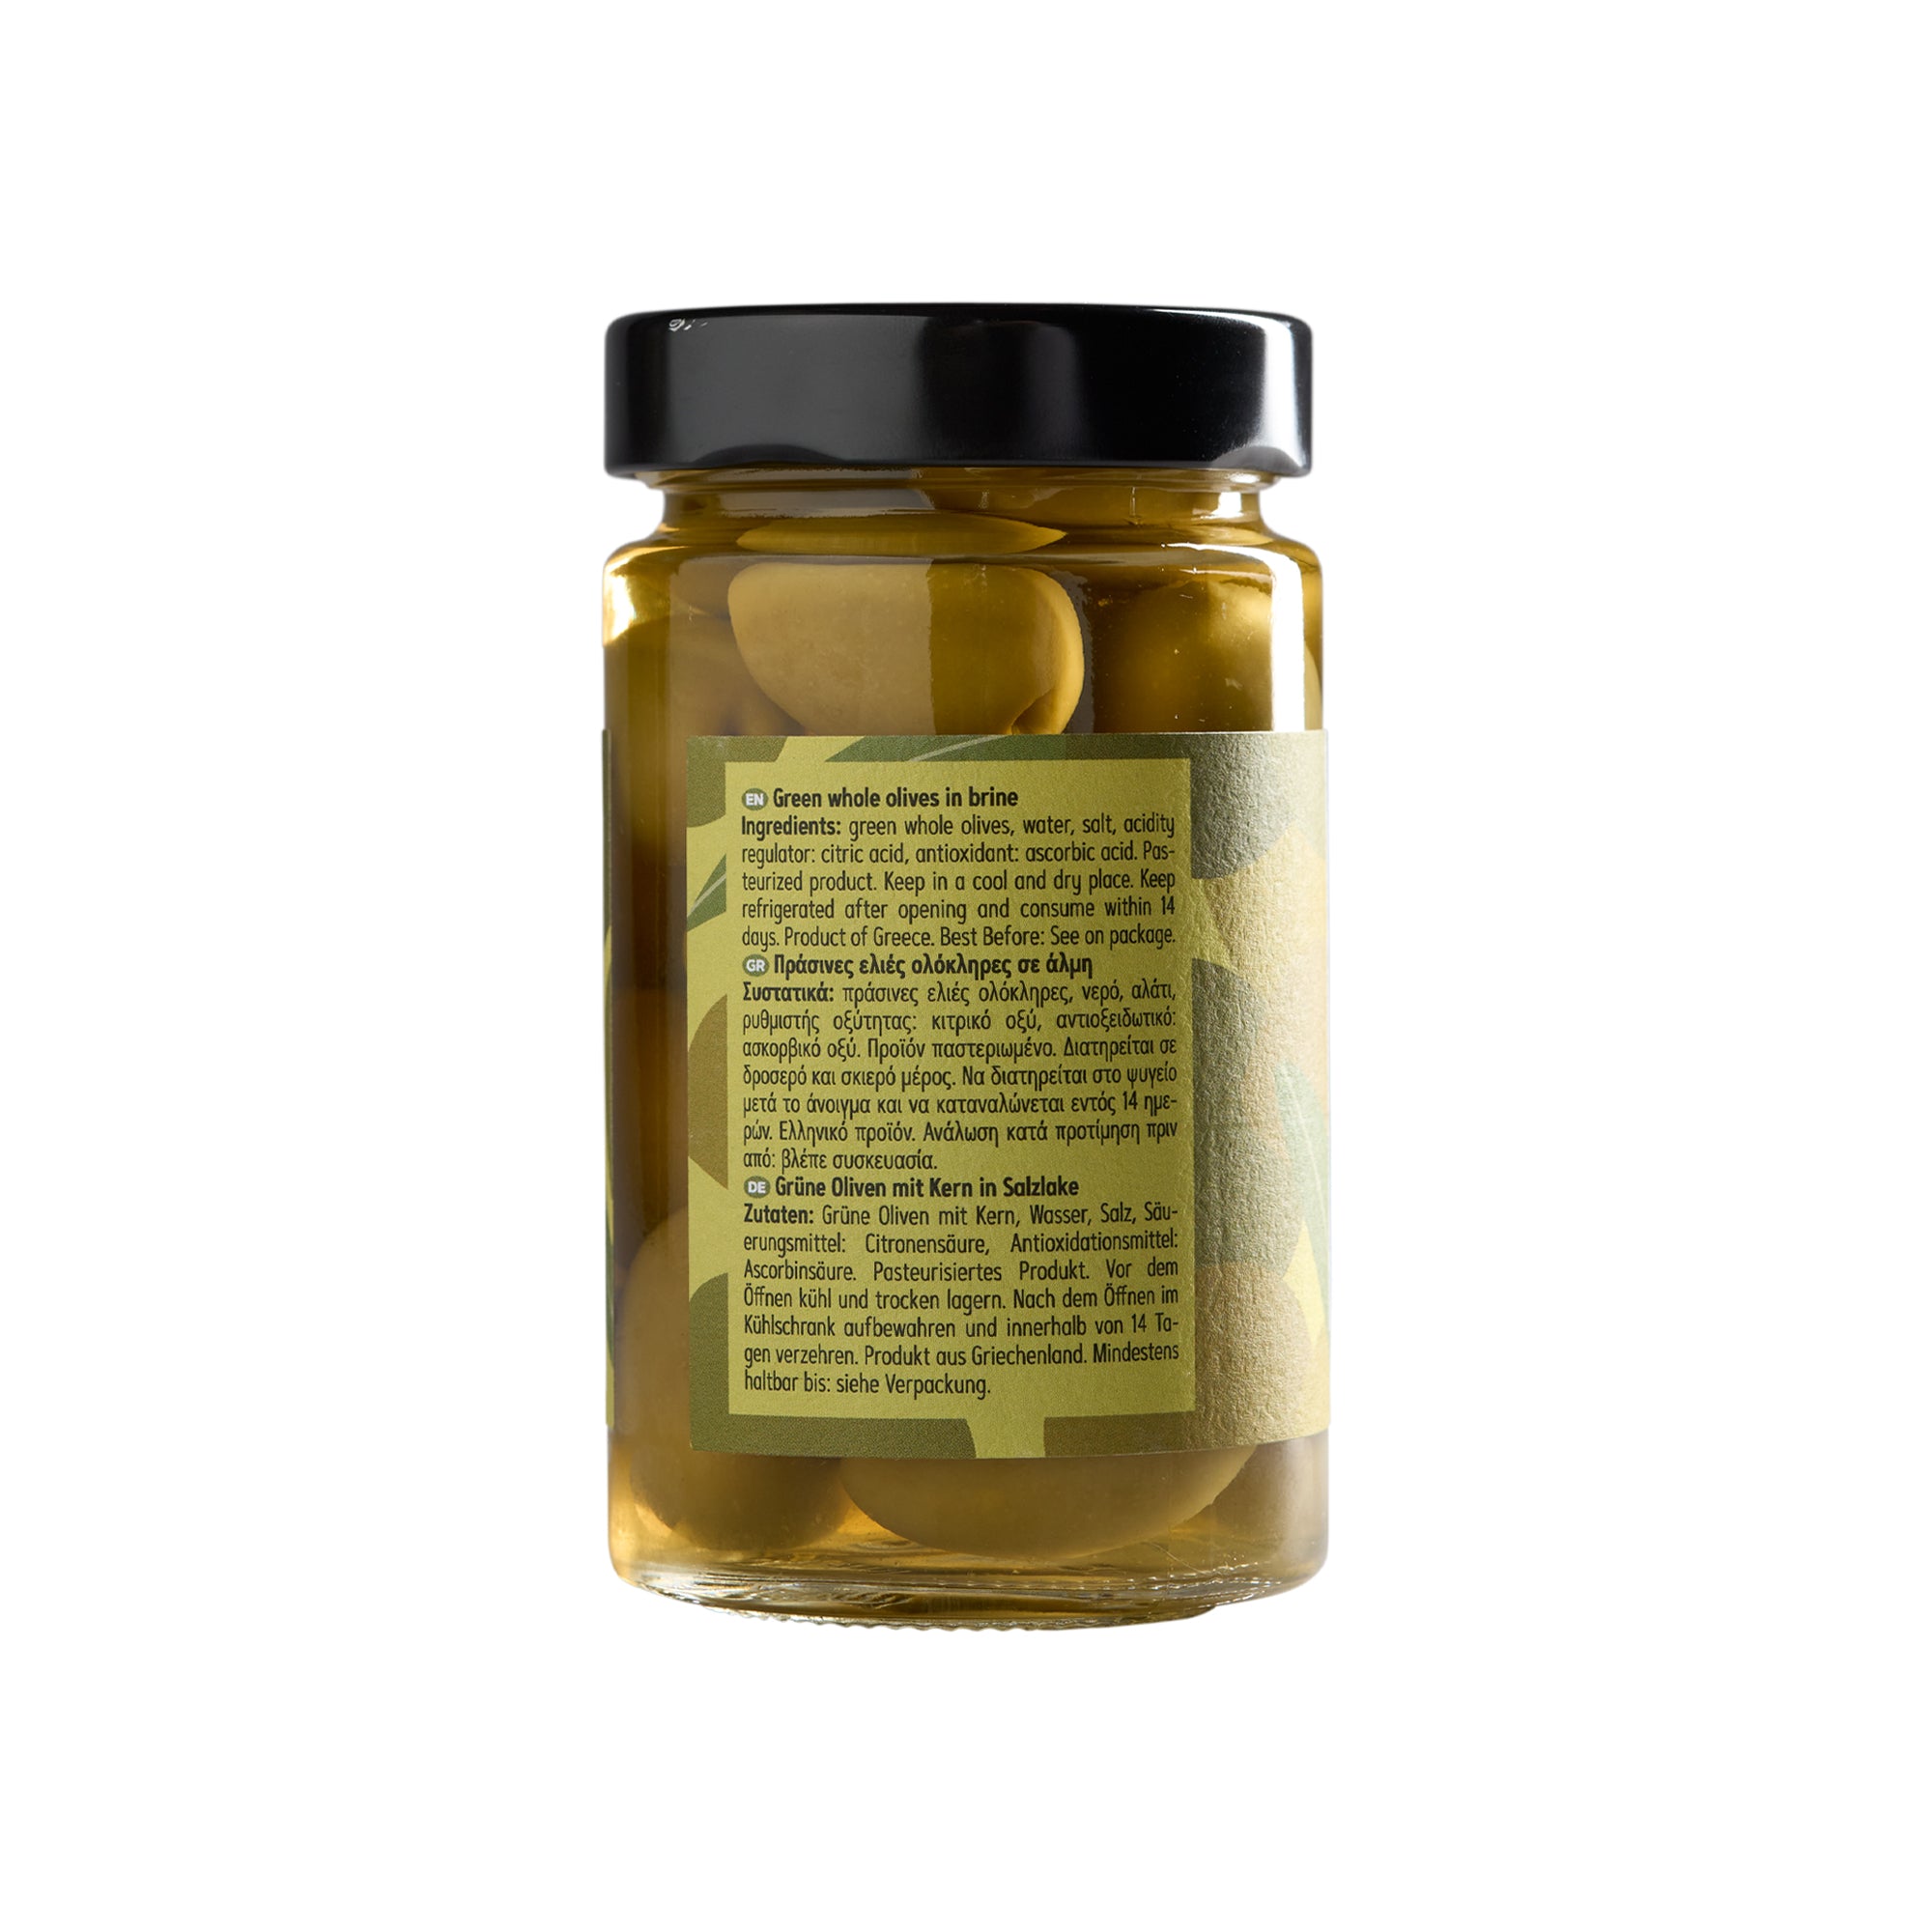 Olymp Konstantopoulos Grüne Oliven mit Kern 320 g